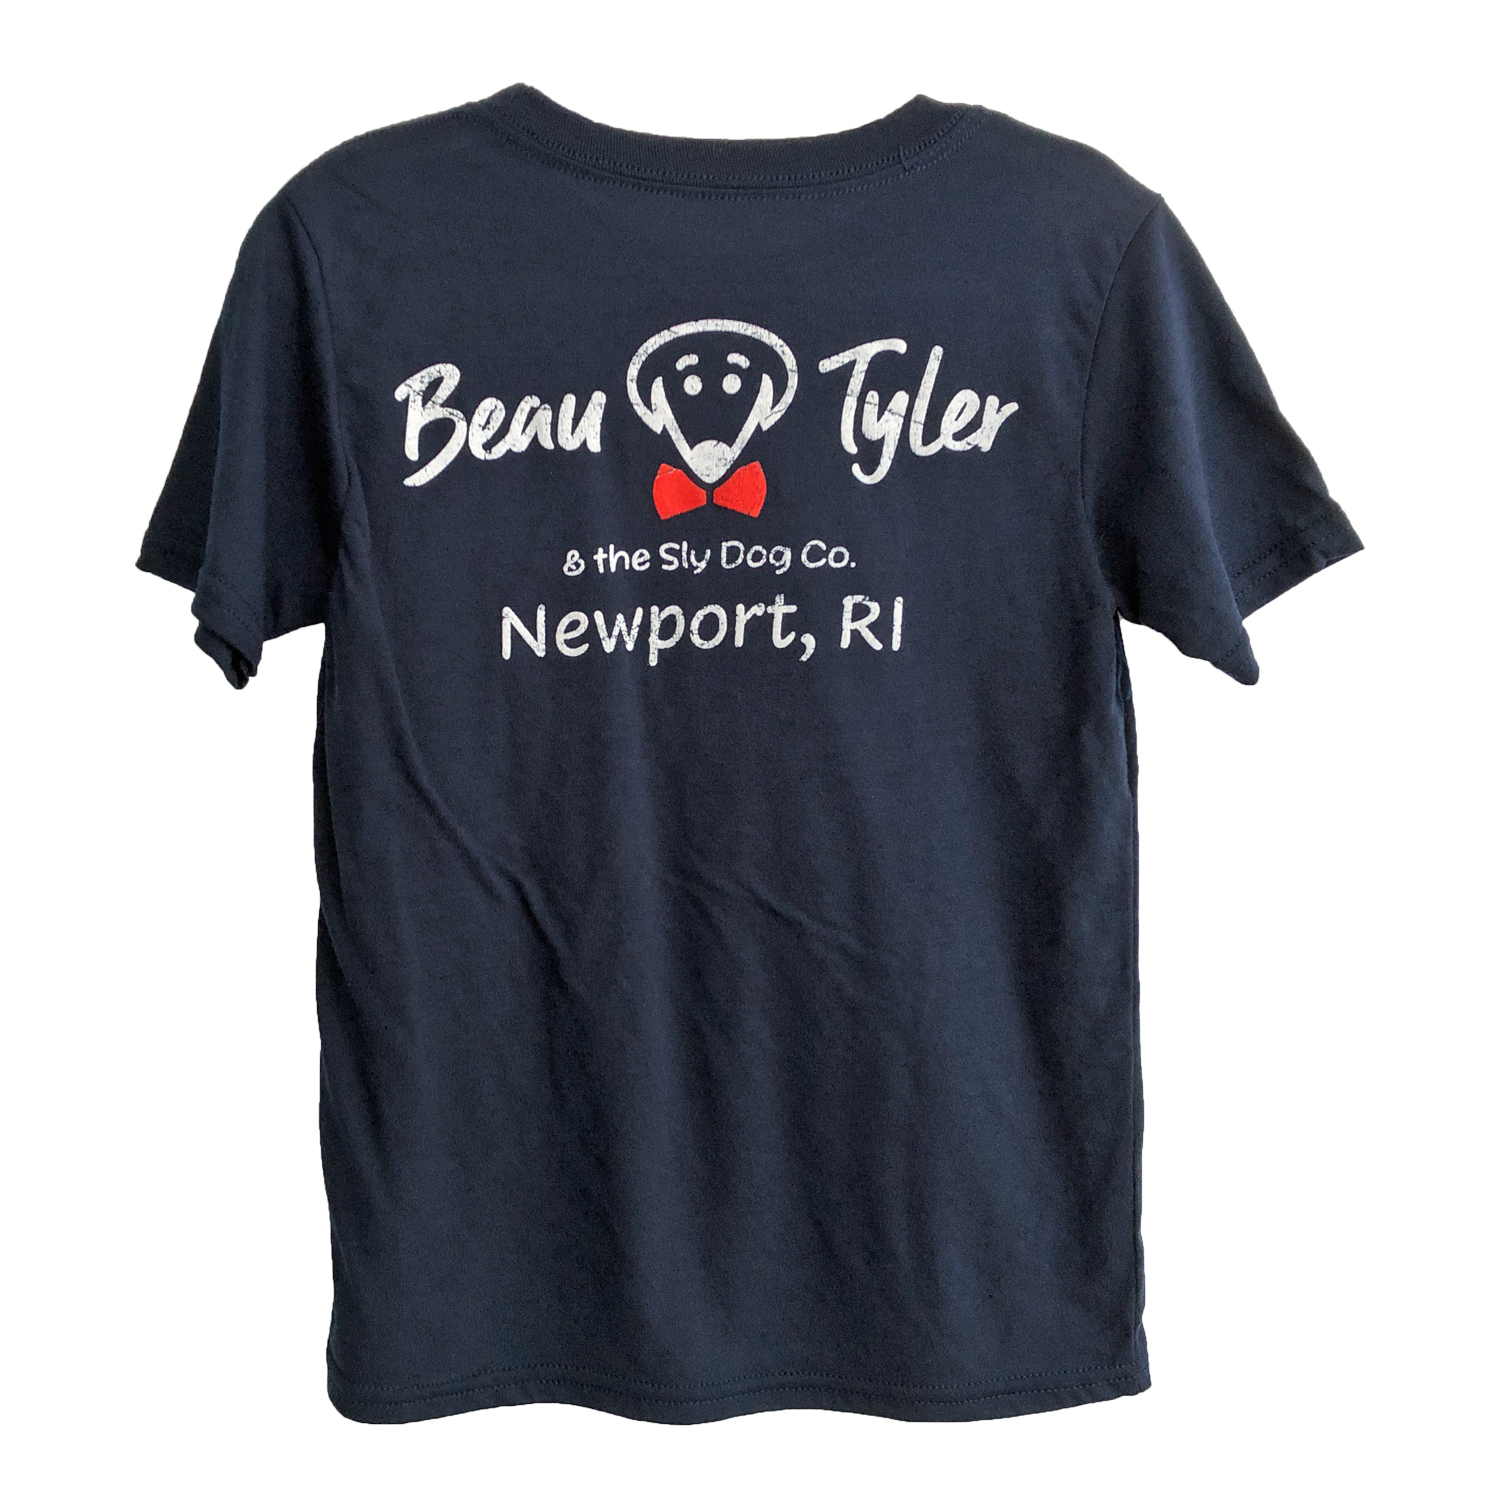 Beau Tyler - Kids vintage Kelly shirt navy blue Newport back temp